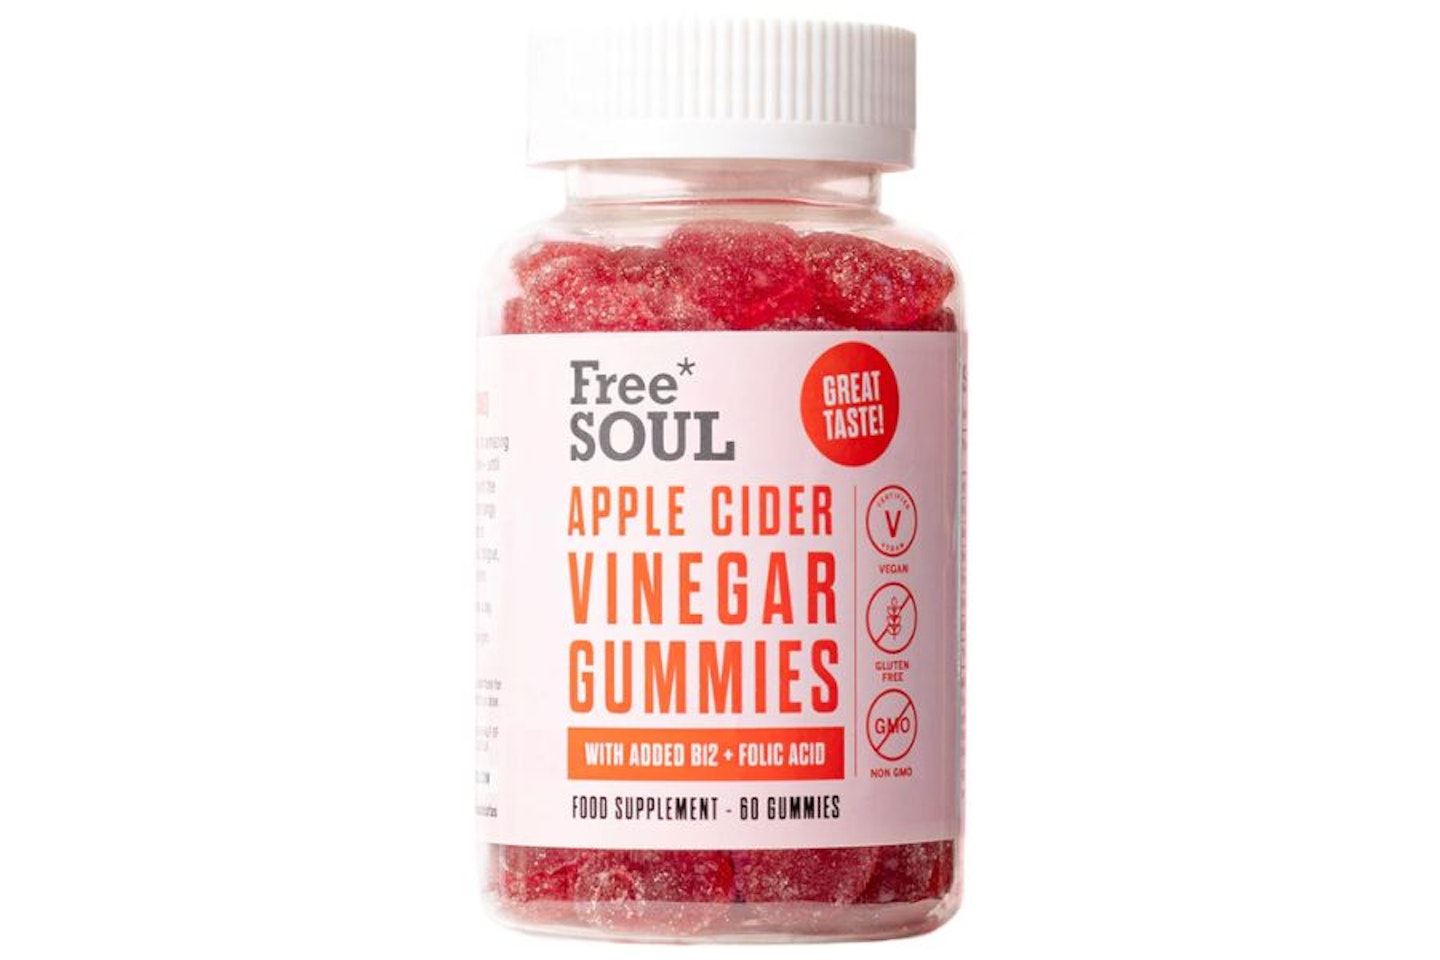 Free Soul Apple Cider Vinegar Gummy bears